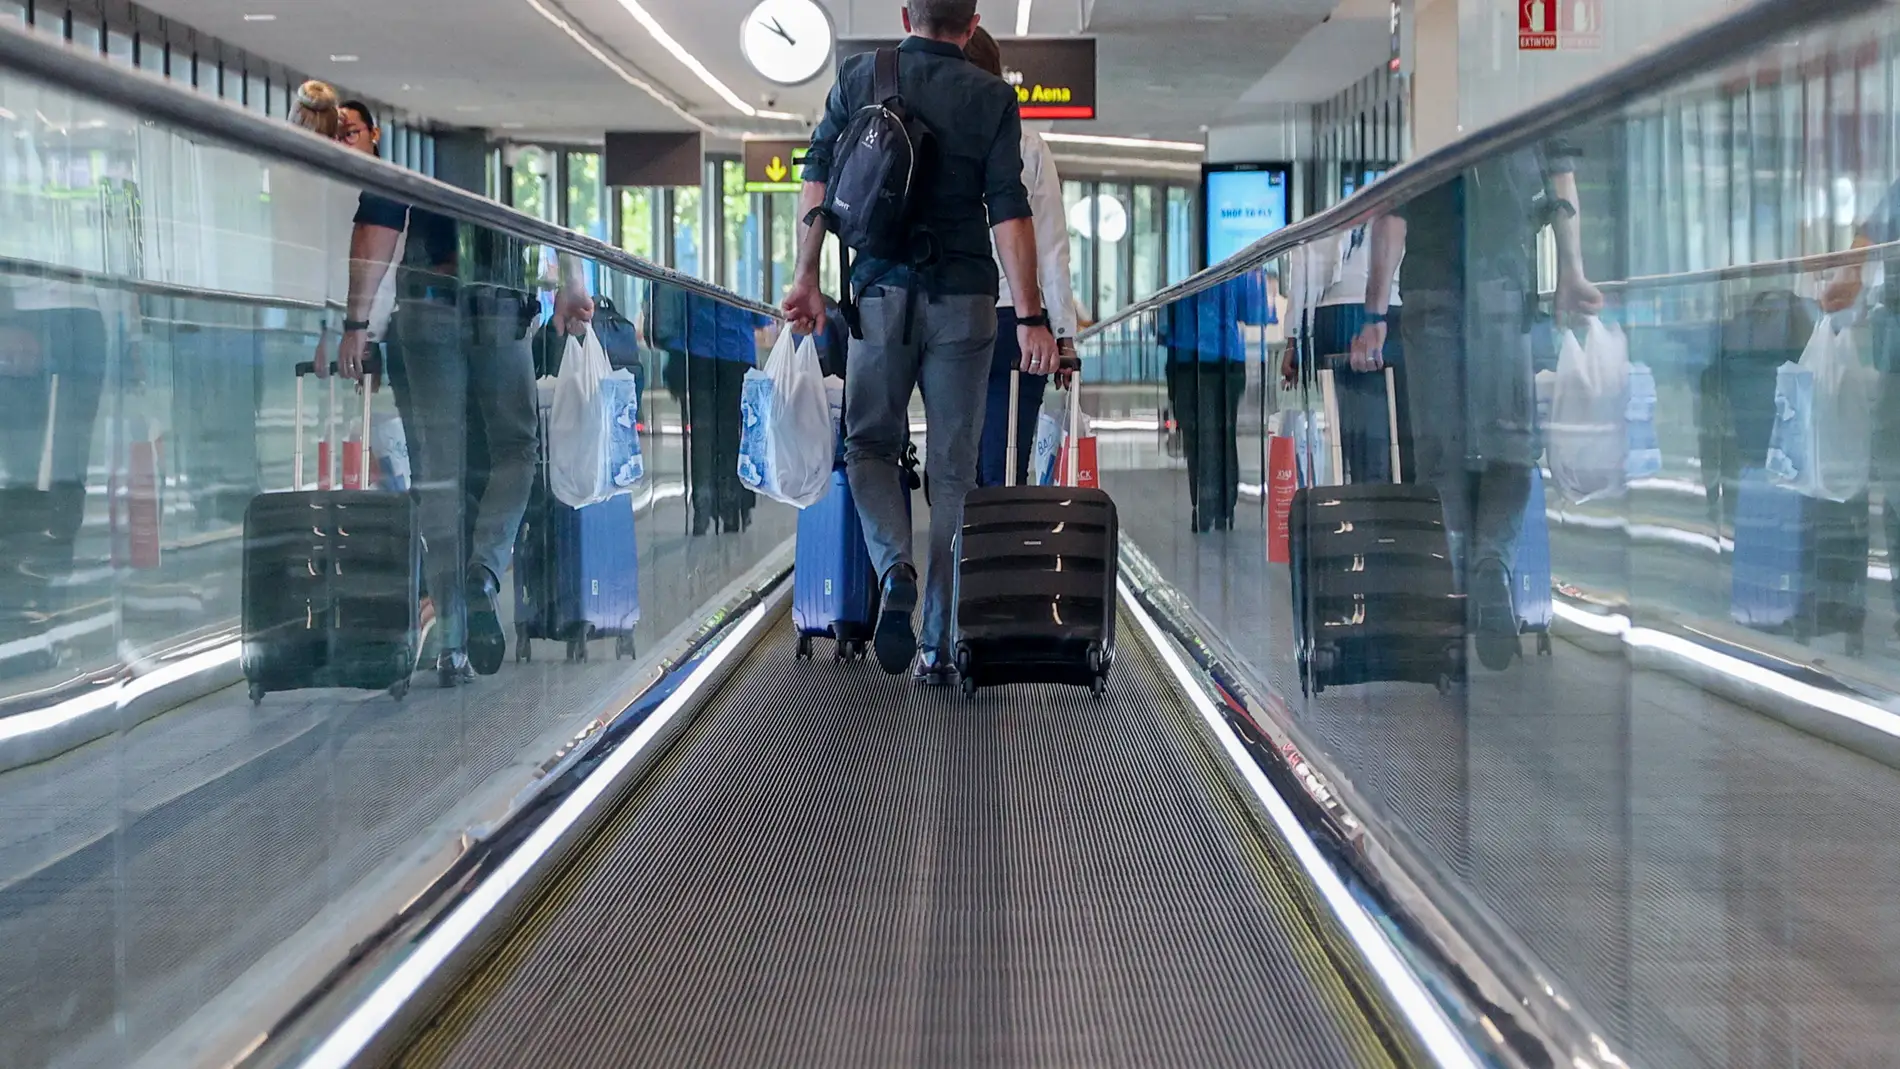 Un hombre con una maleta en el aeropuerto Adolfo Suárez-Madrid Barajas | Foto de archivo 